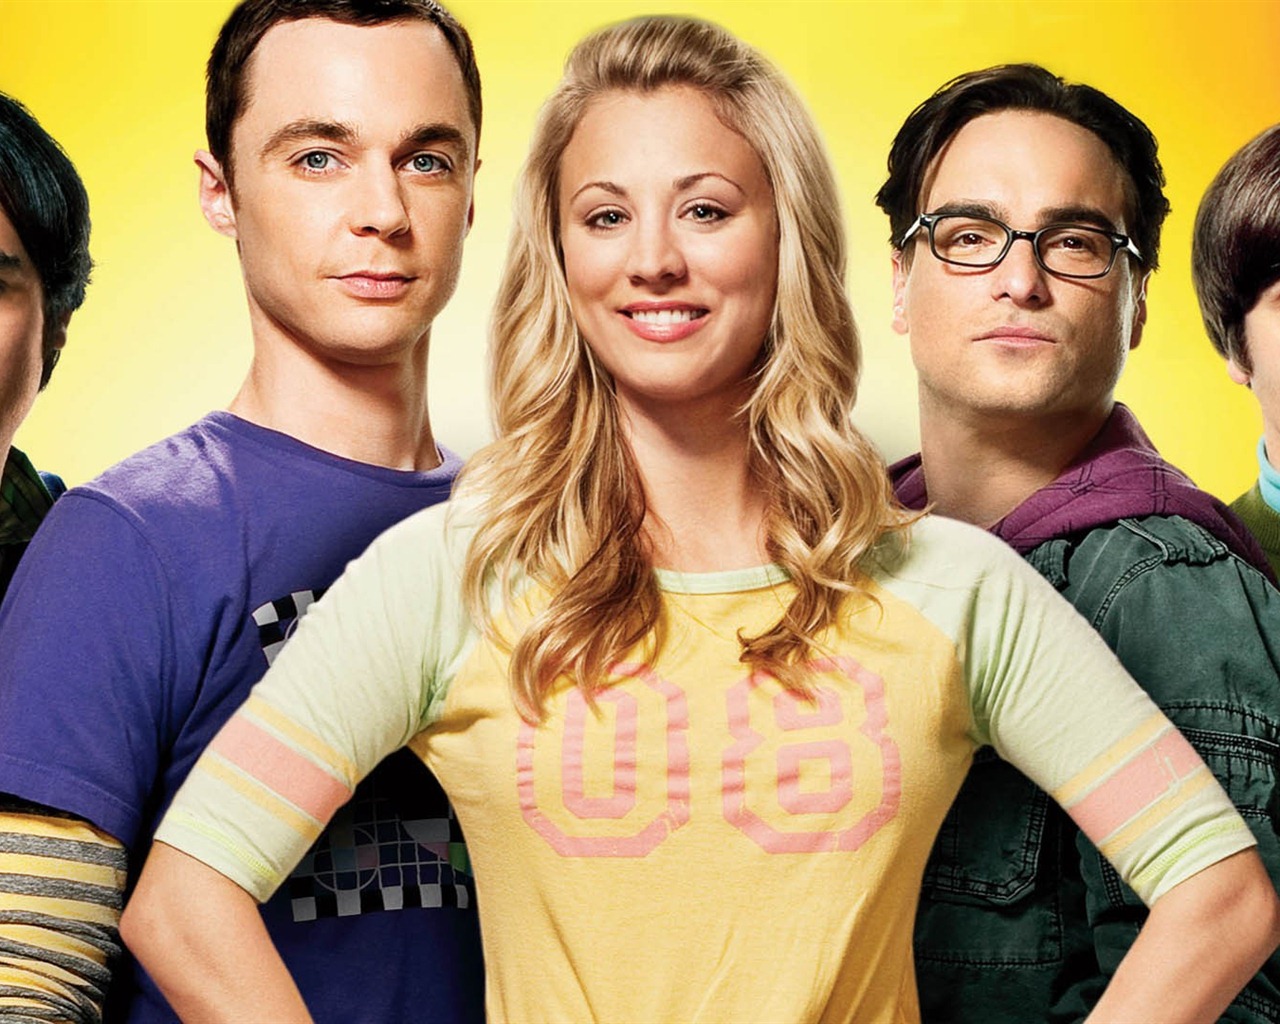 The Big Bang Theory 生活大爆炸 电视剧高清壁纸24 - 1280x1024